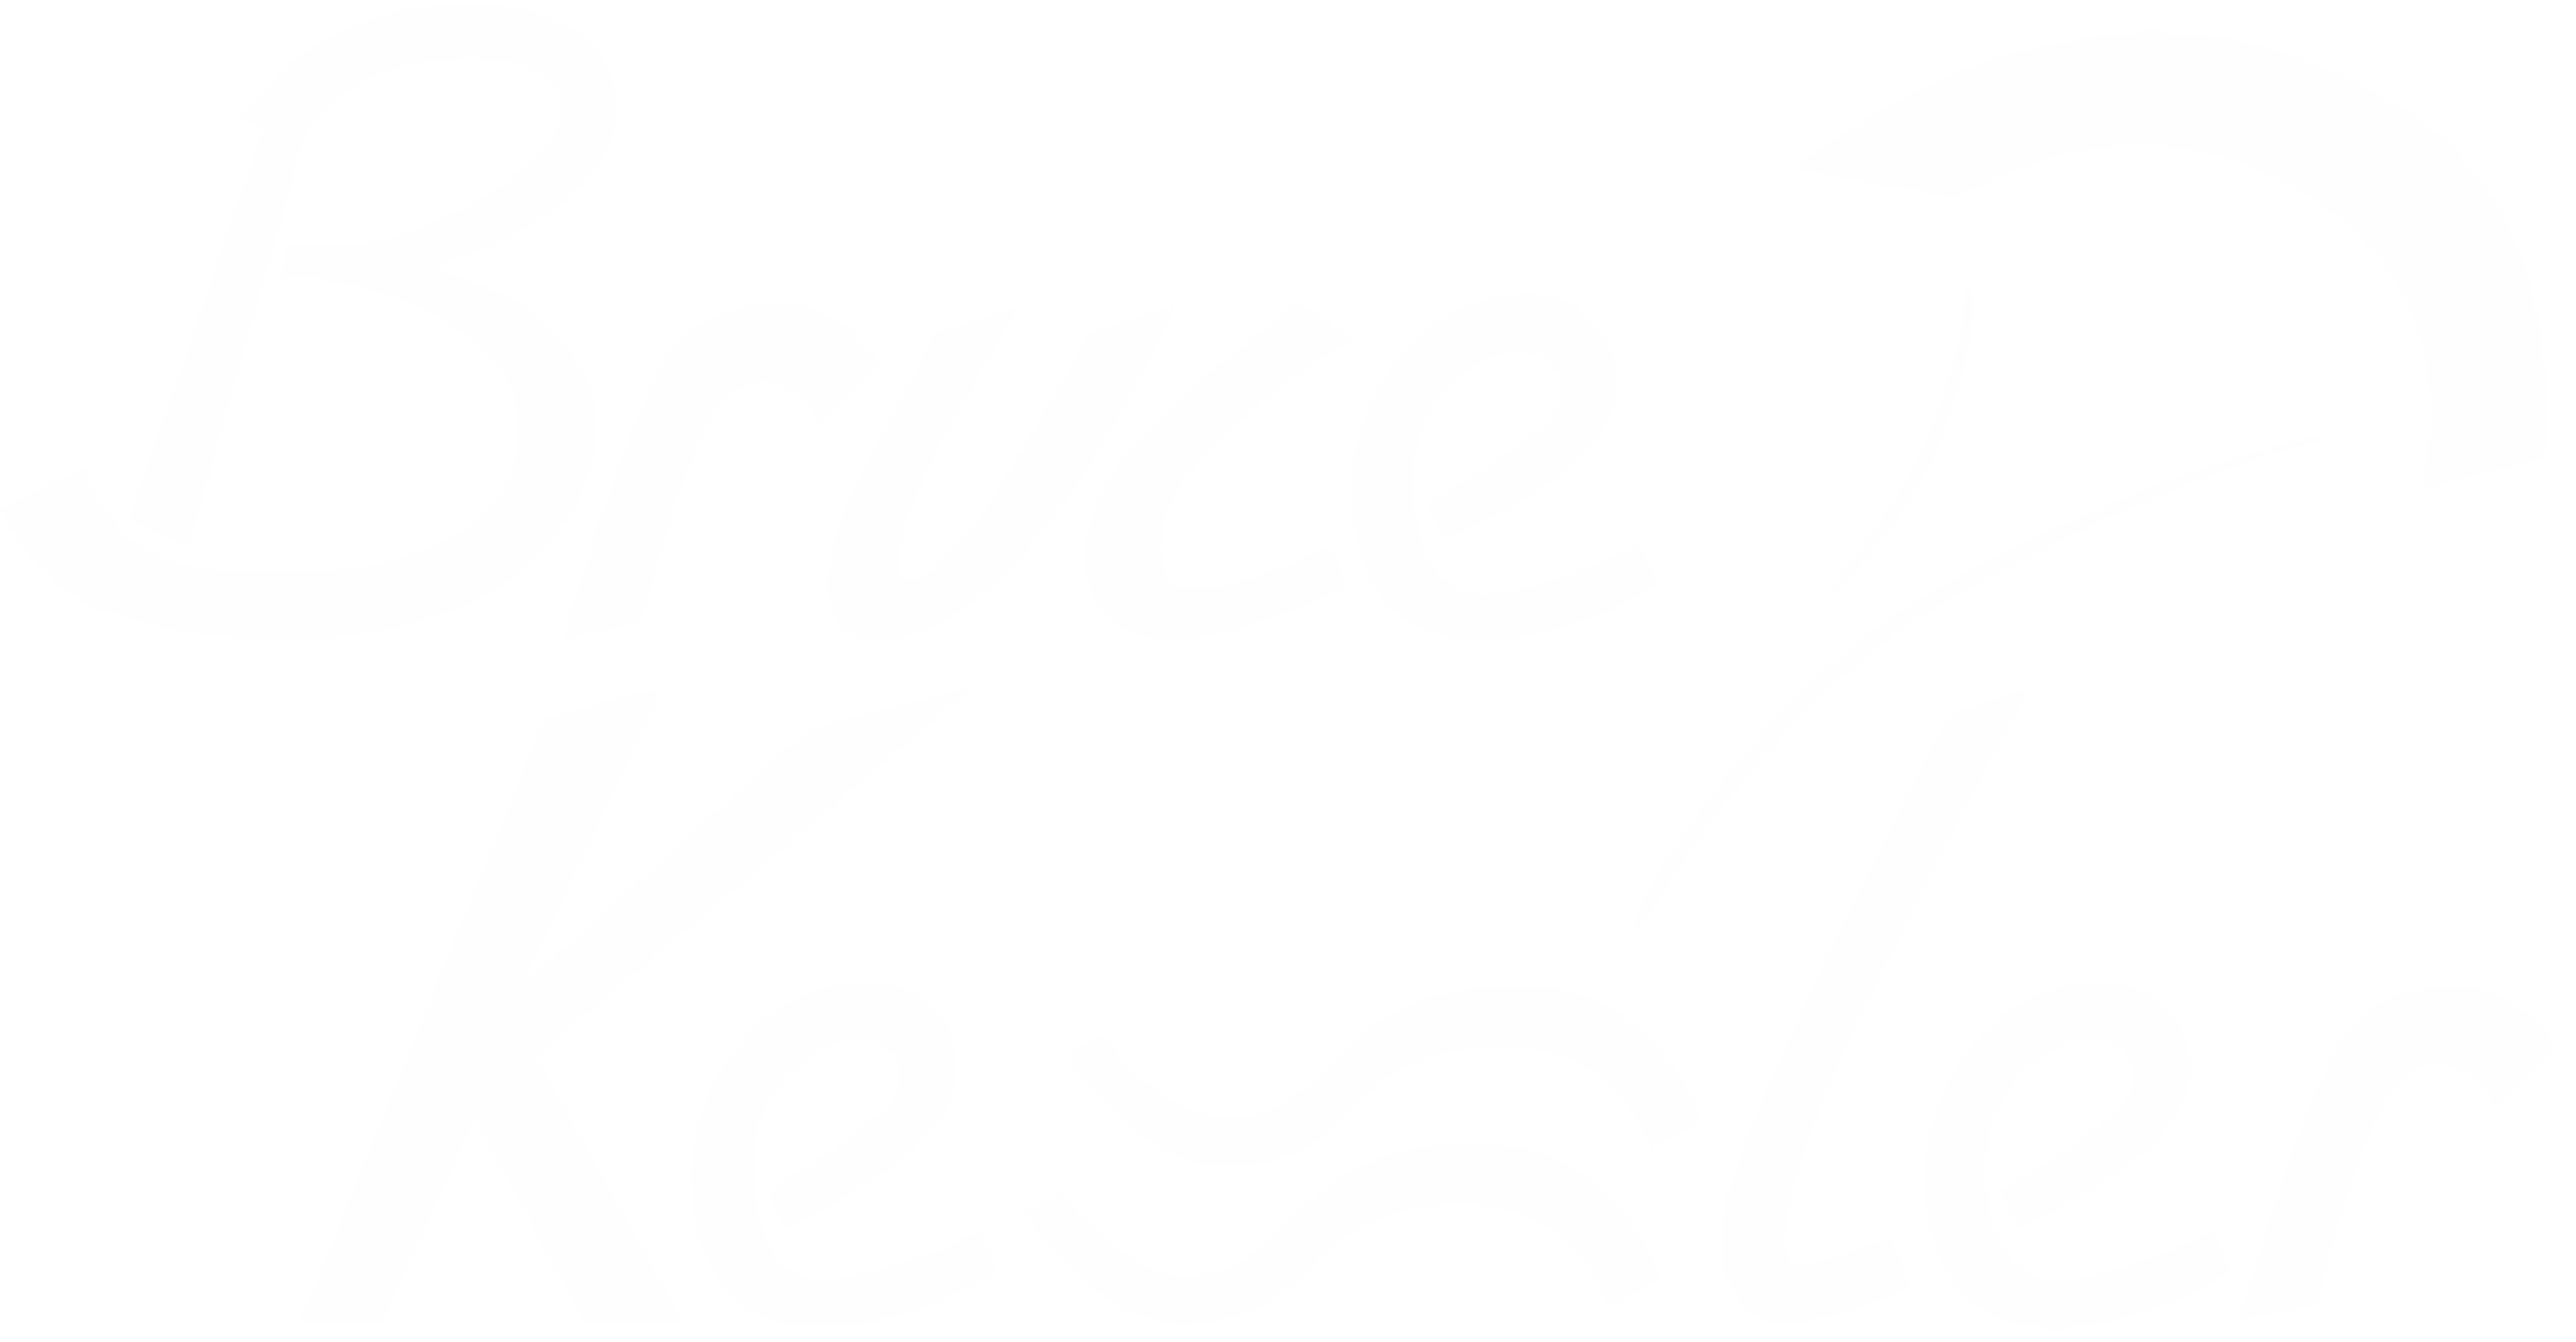 Bruce Kessler Kitefoilracer